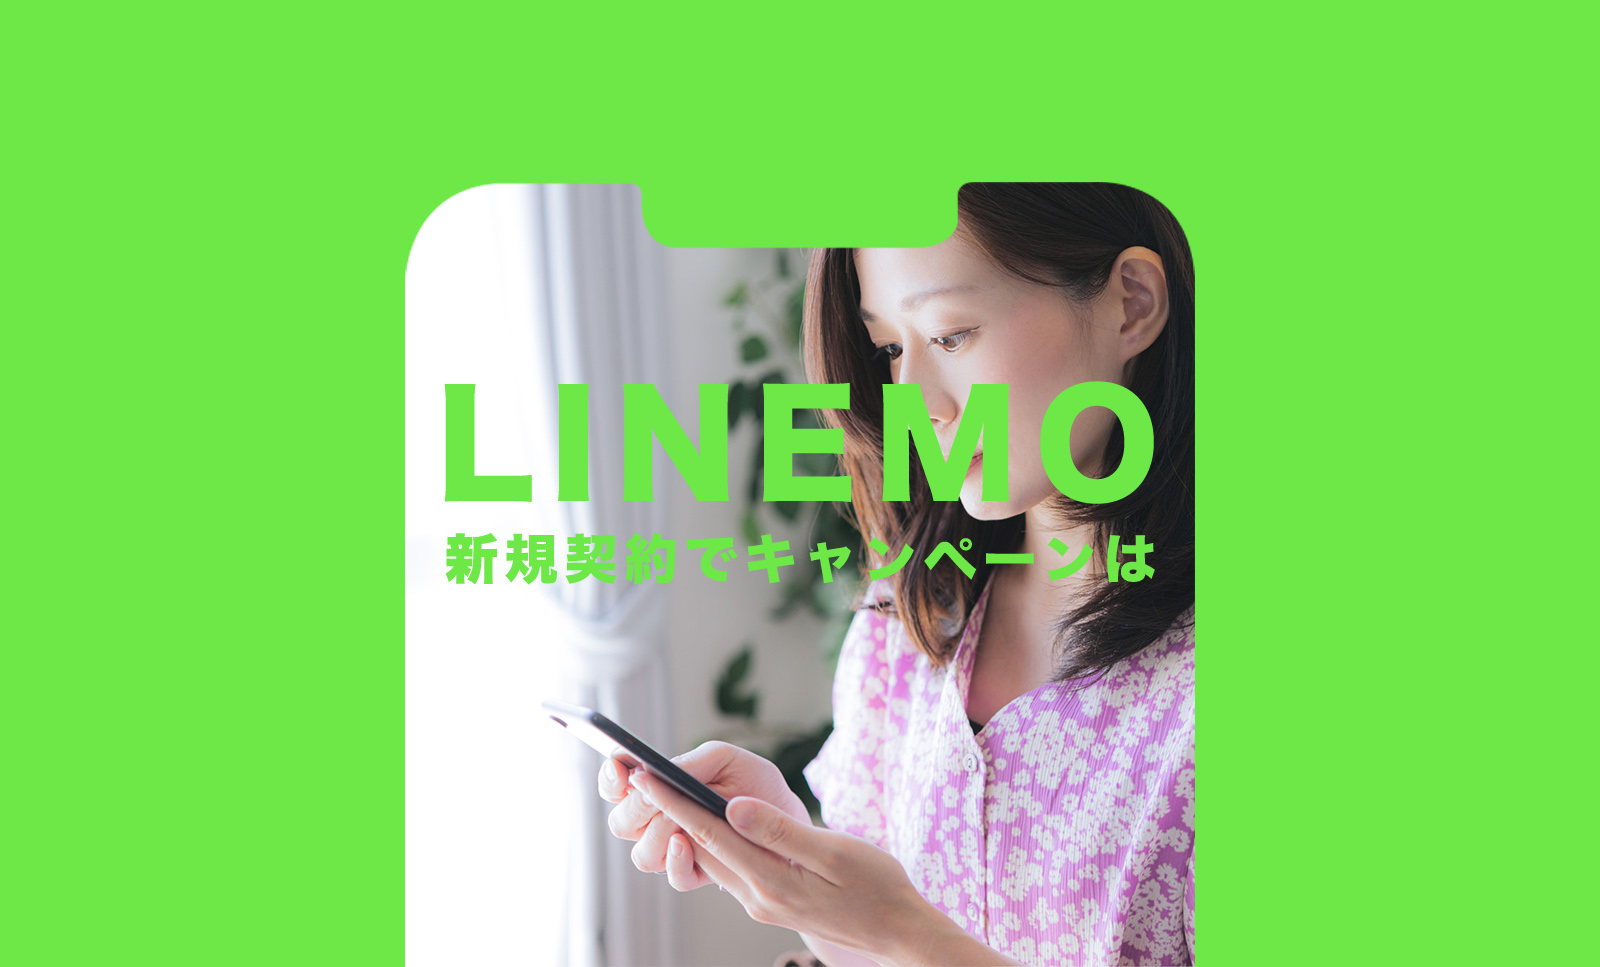 LINEMO(ラインモ)のキャンペーンで3000円相当分が新規契約でもらえる詳細を解説のサムネイル画像